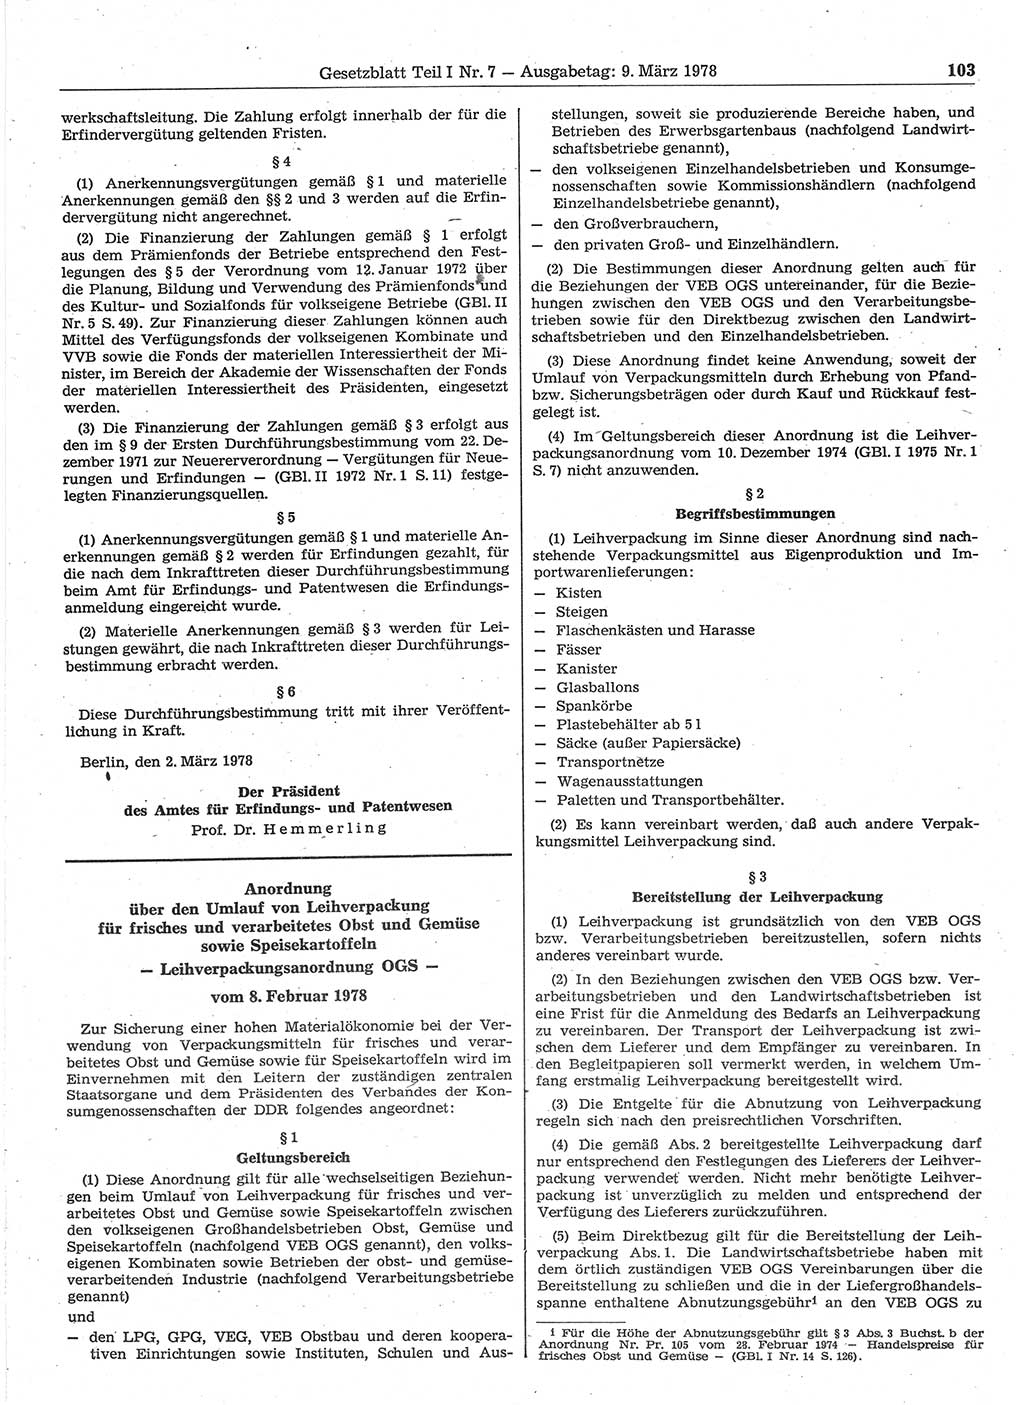 Gesetzblatt (GBl.) der Deutschen Demokratischen Republik (DDR) Teil Ⅰ 1978, Seite 103 (GBl. DDR Ⅰ 1978, S. 103)